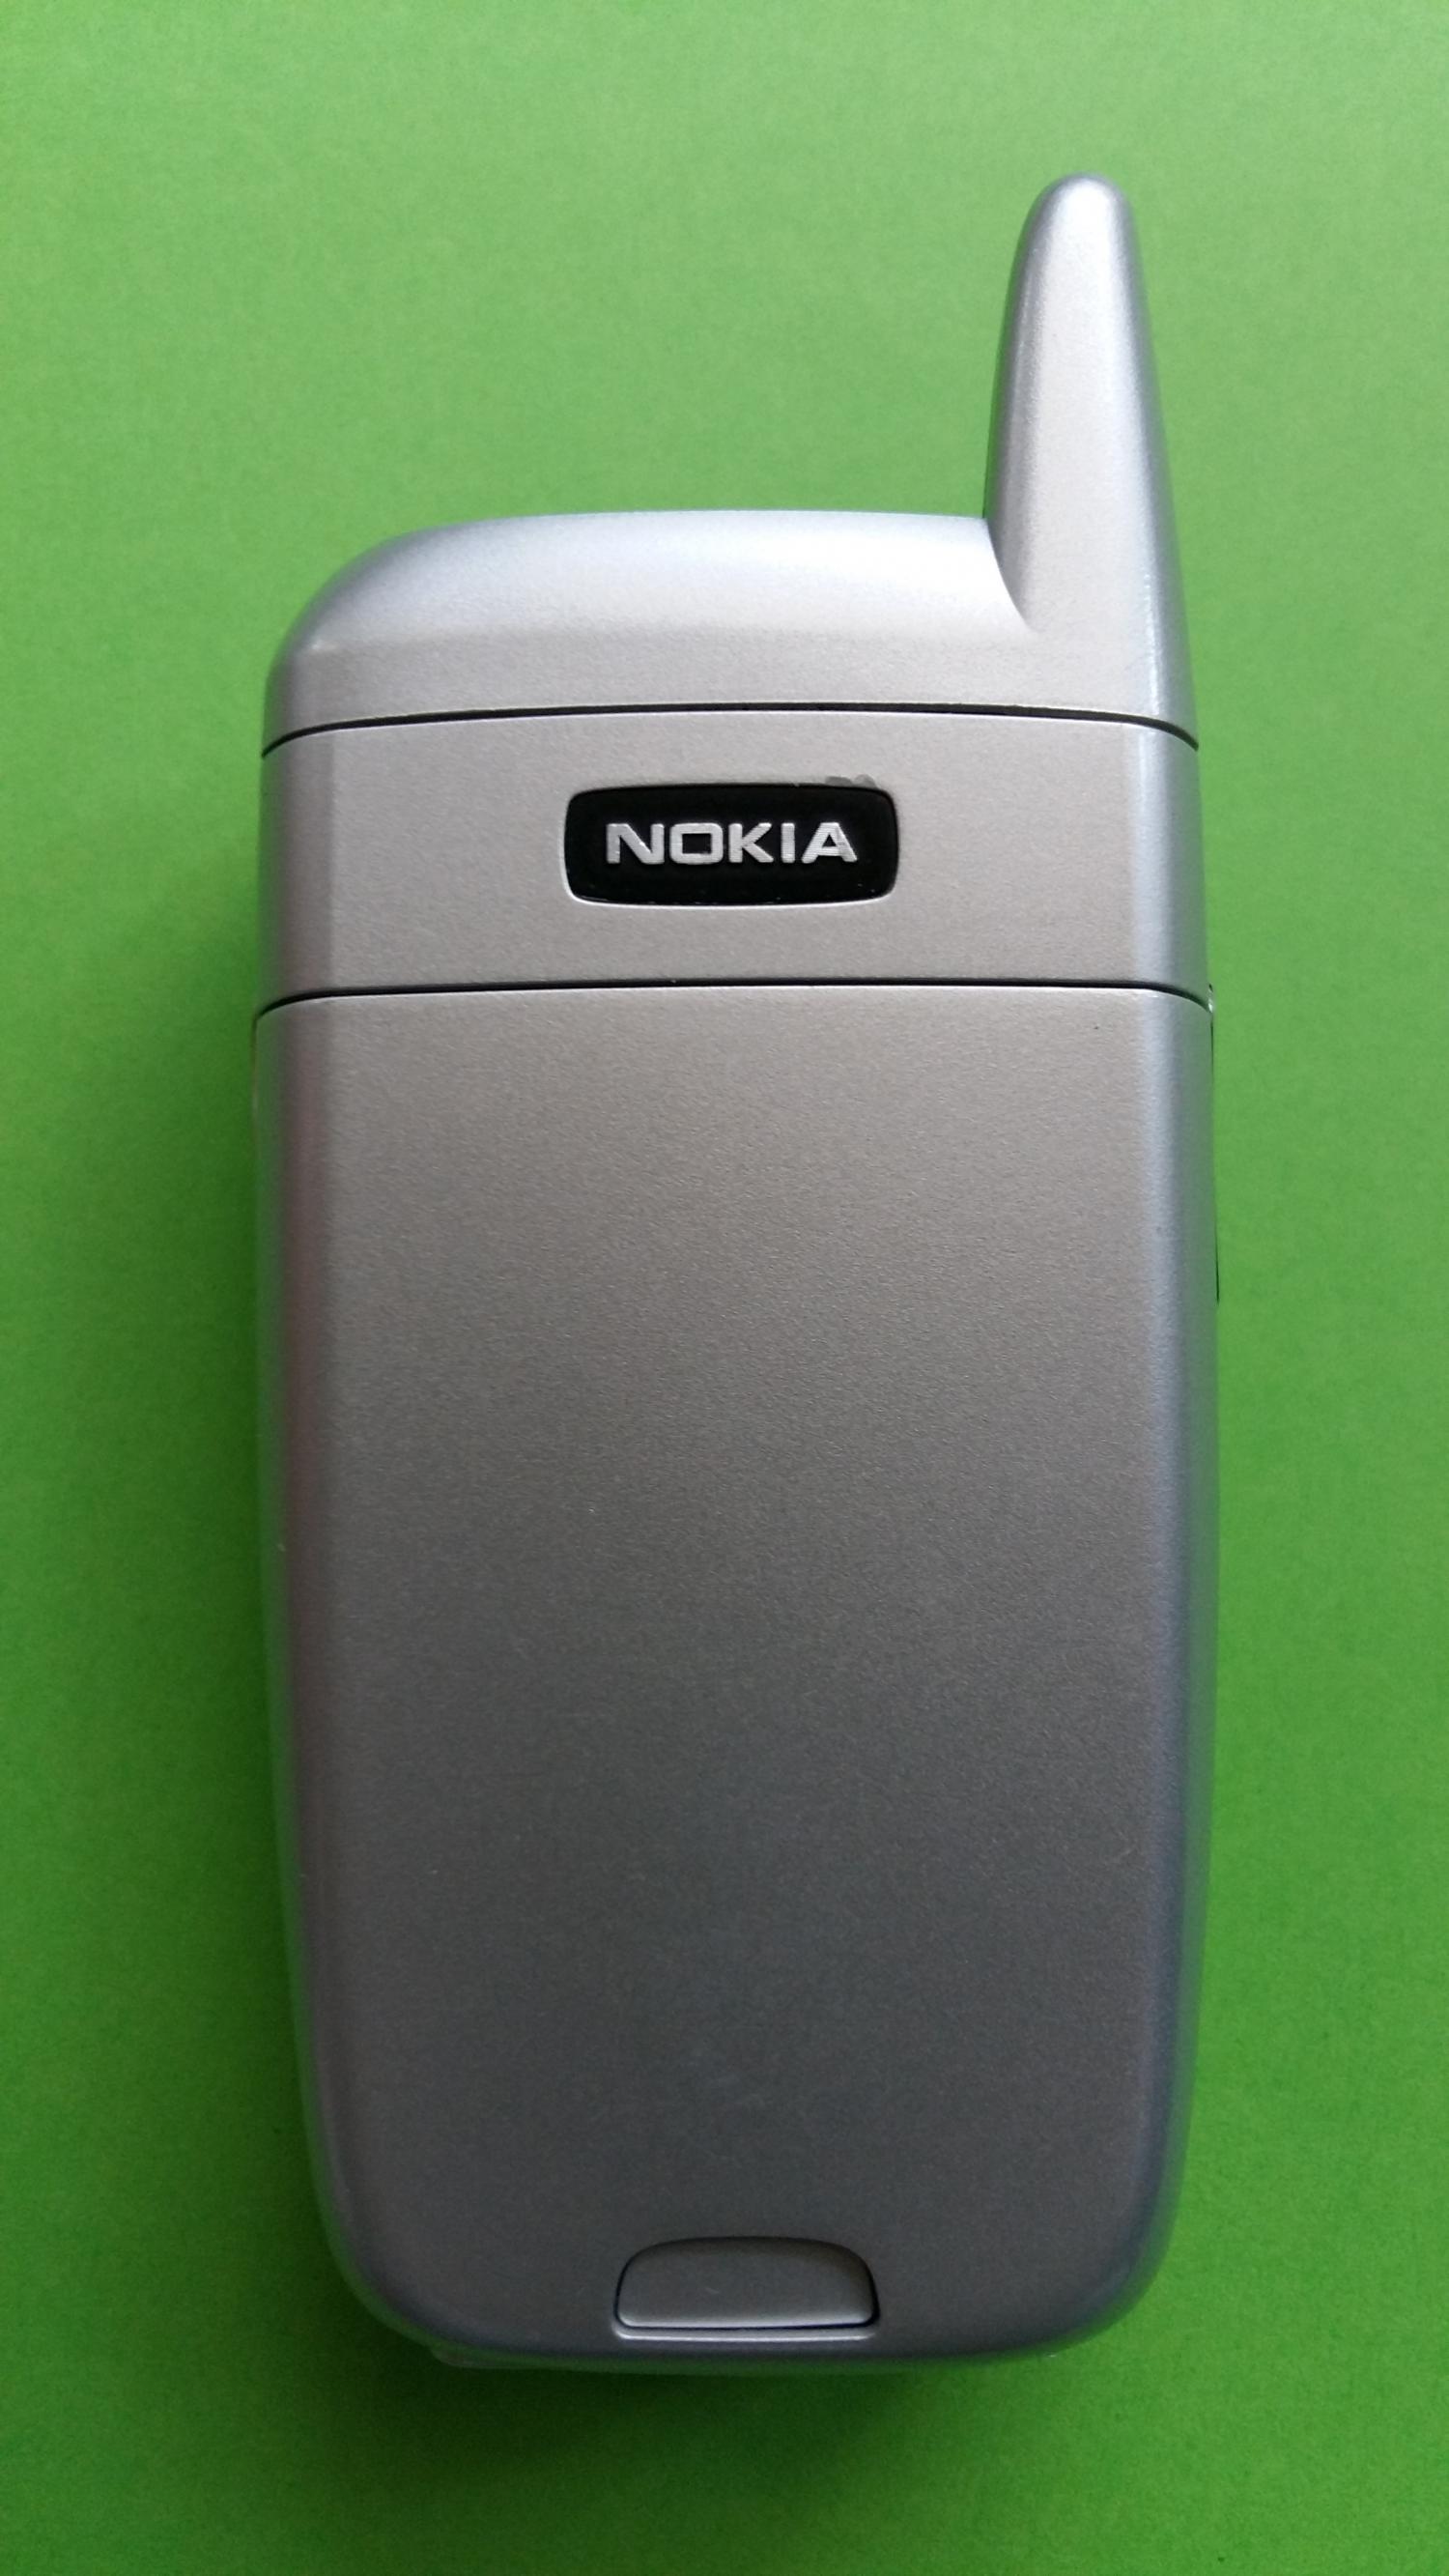 image-7323655-Nokia 6101 (8)5.jpg